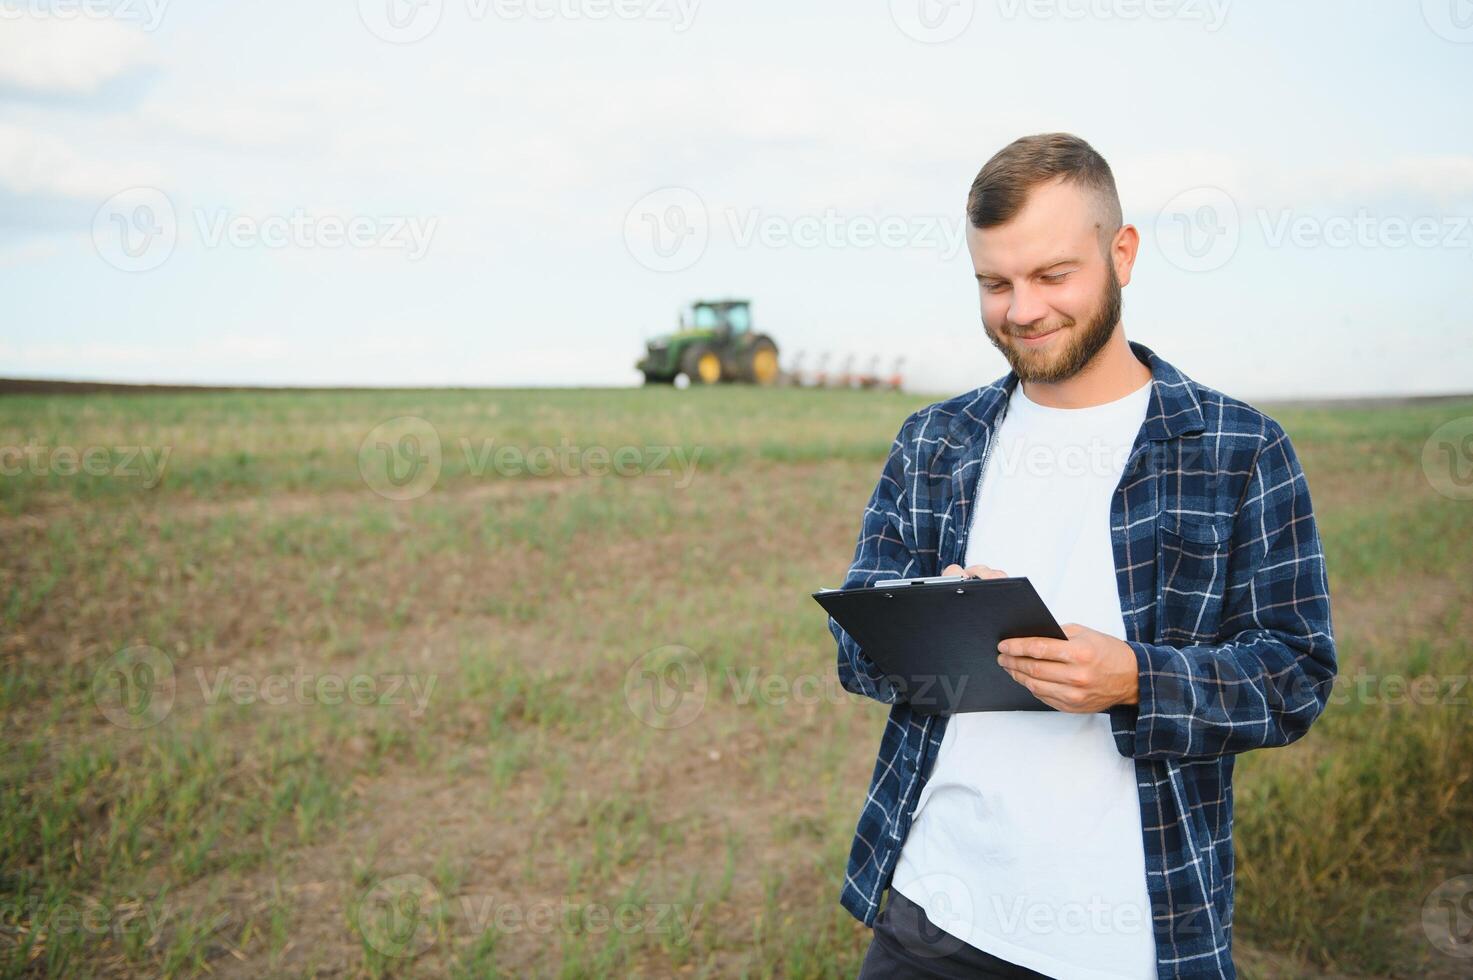 lantbruk. jordbrukare arbetssätt i en fält i de bakgrund traktor plogar jord i en fält av vete. jordbruk lantbruk begrepp. företag jordbrukare i de fält foto